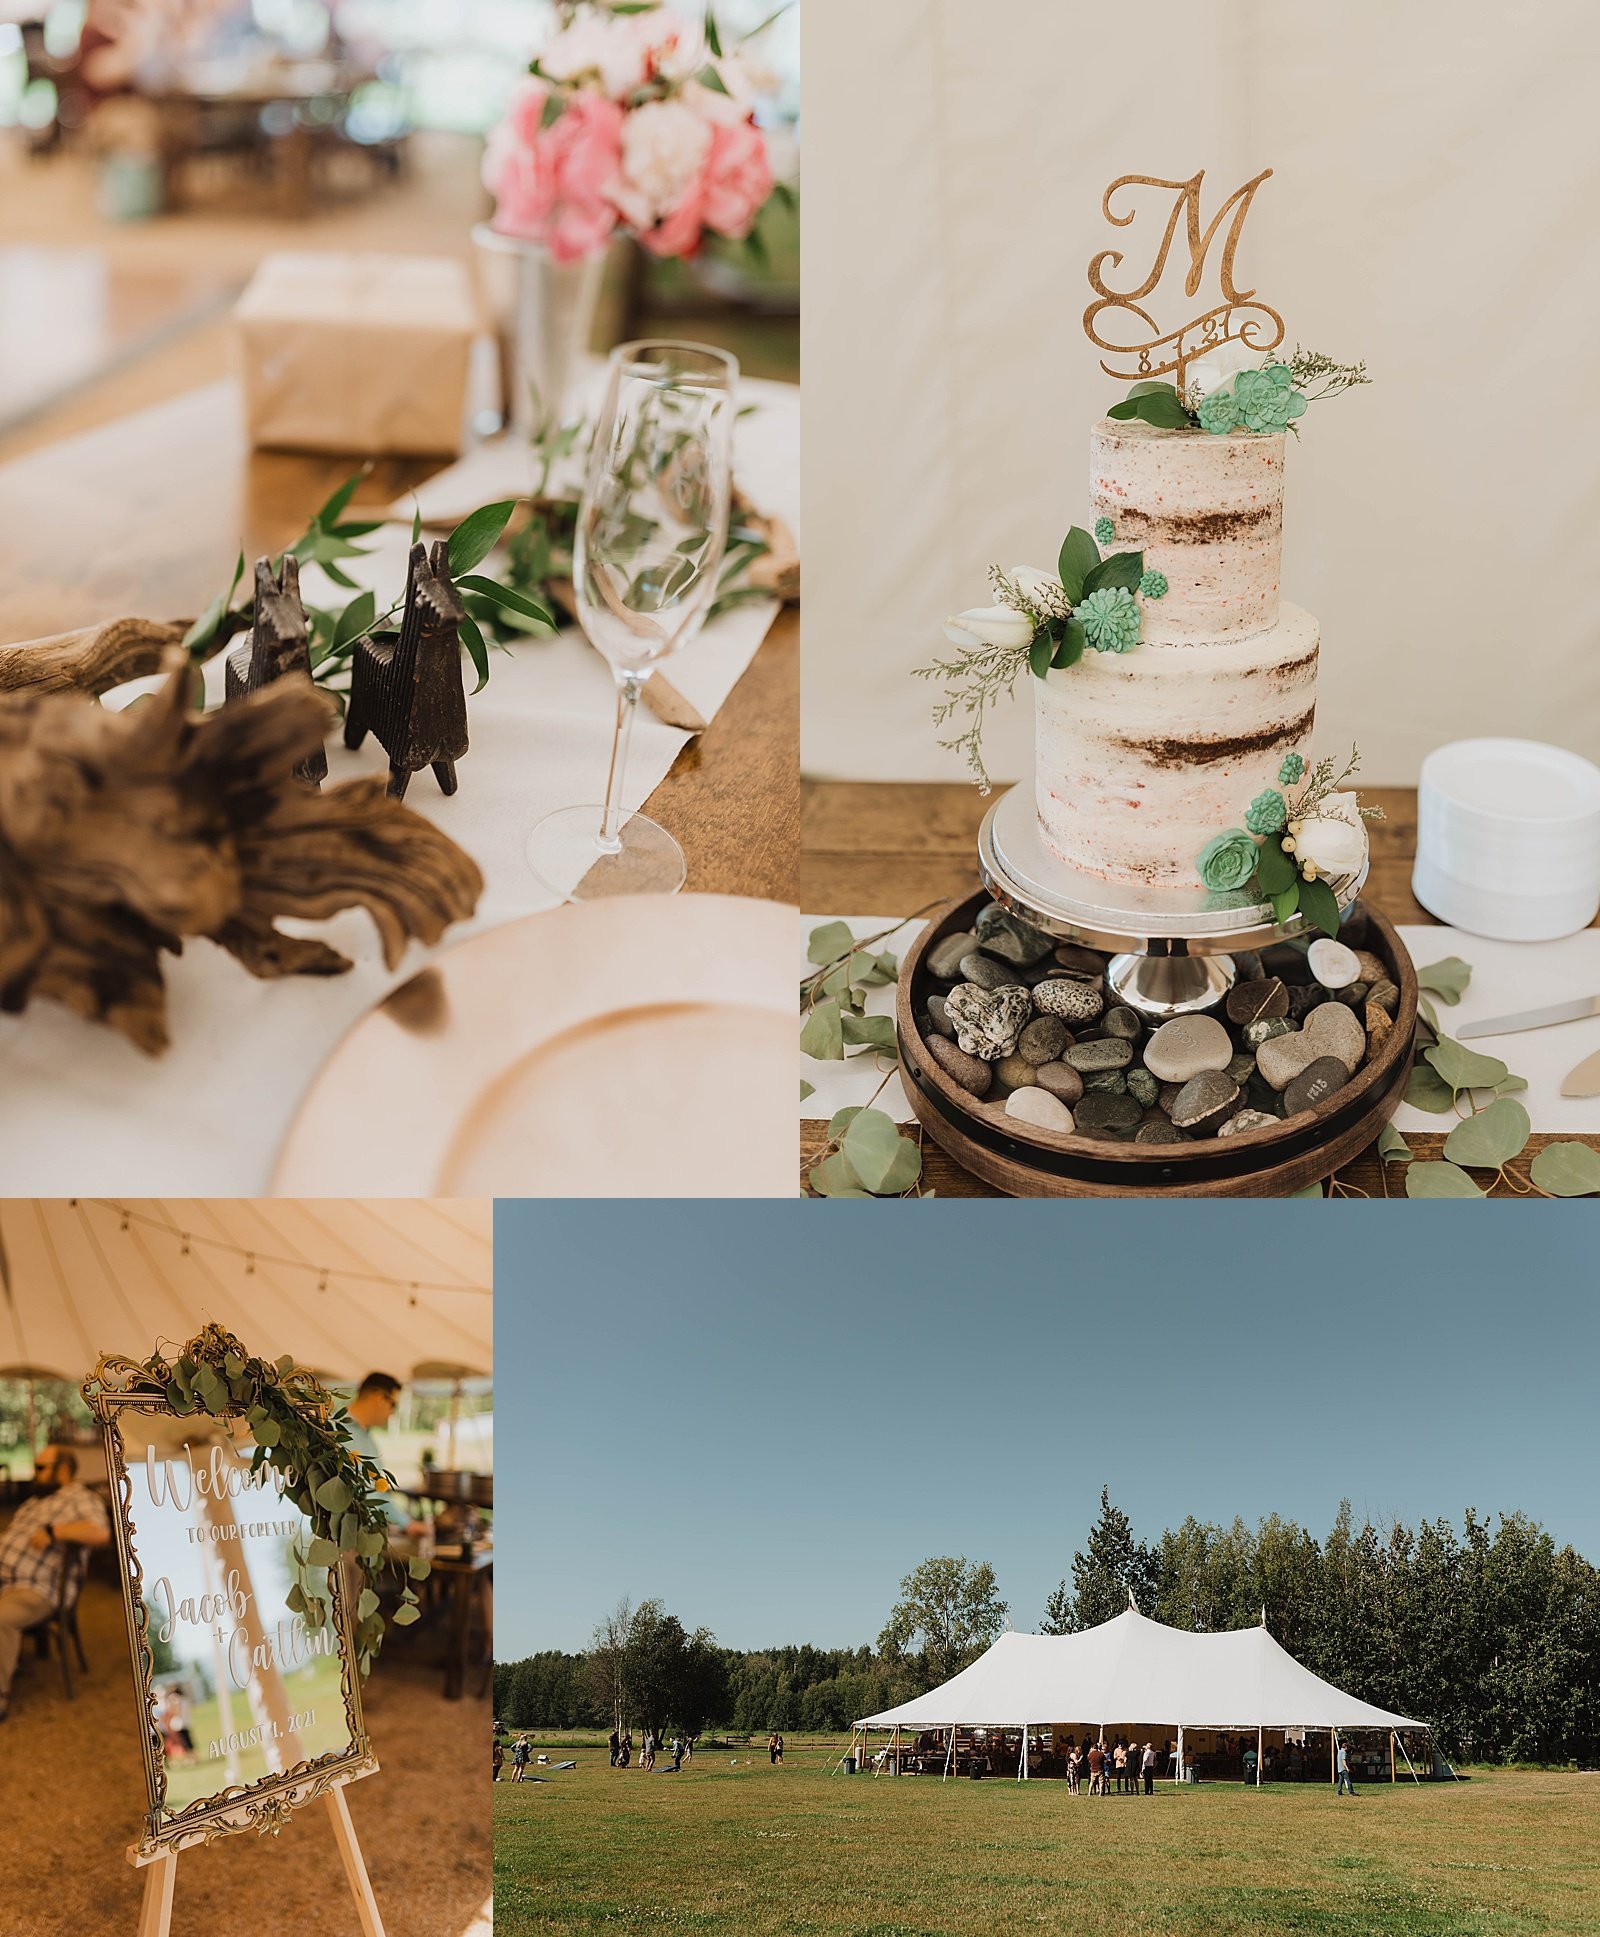  Reception details at a summer wedding in Alaska. 